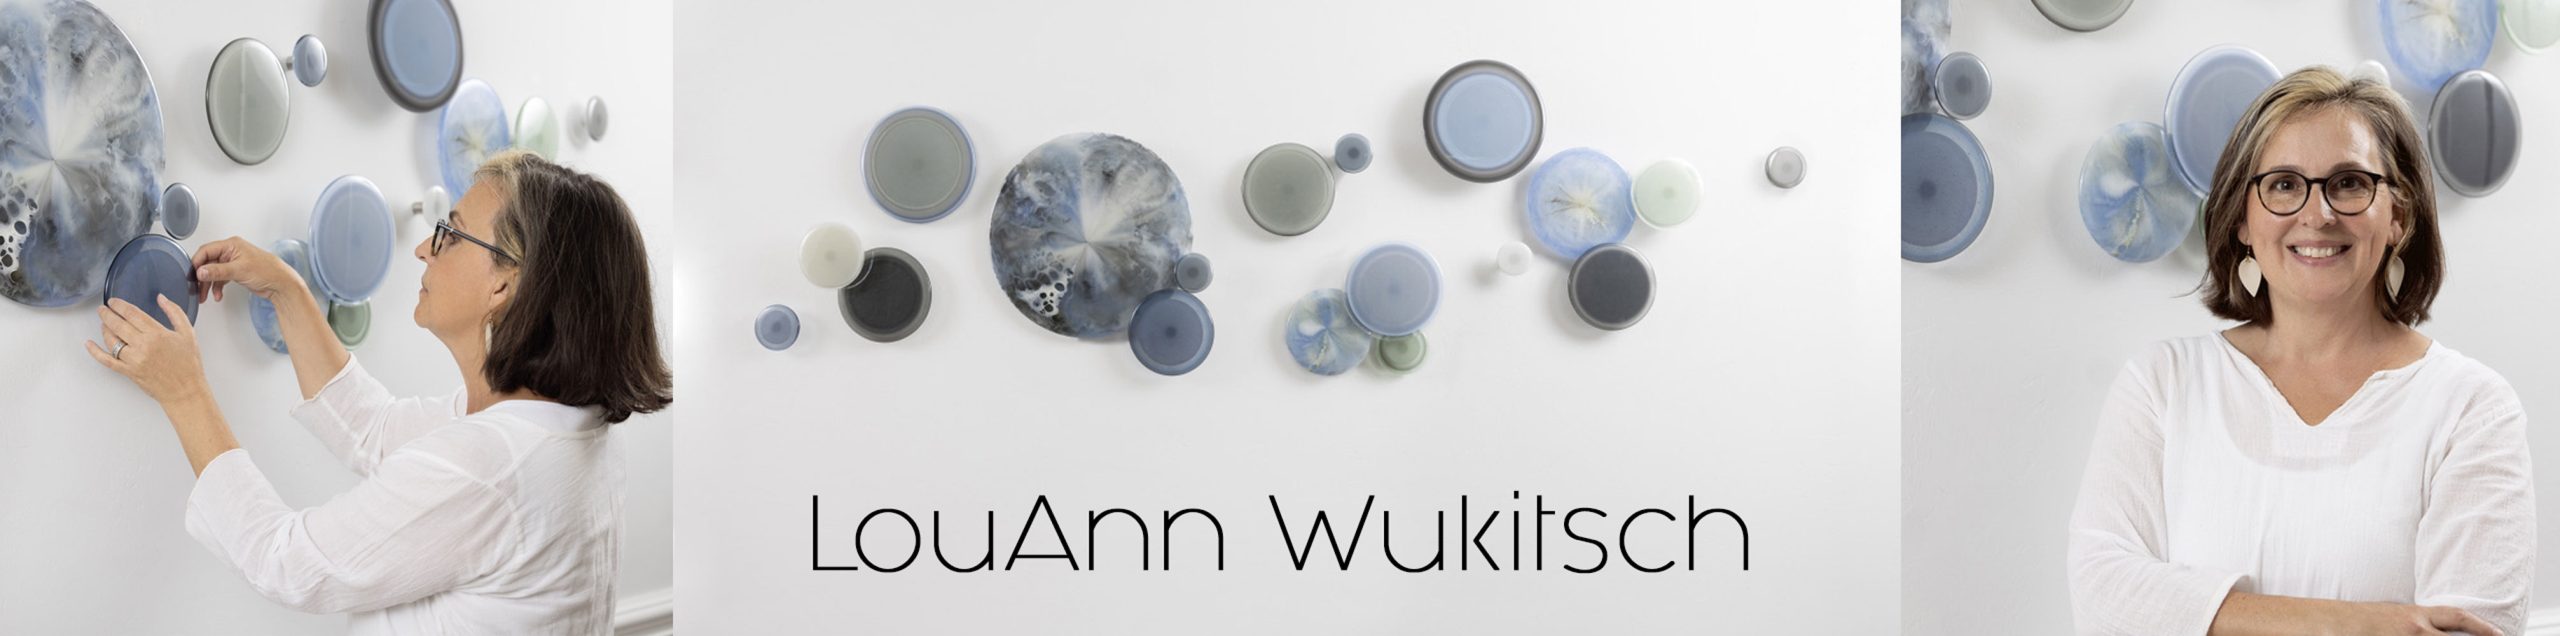 LouAnn Wukitsch Glass Artist